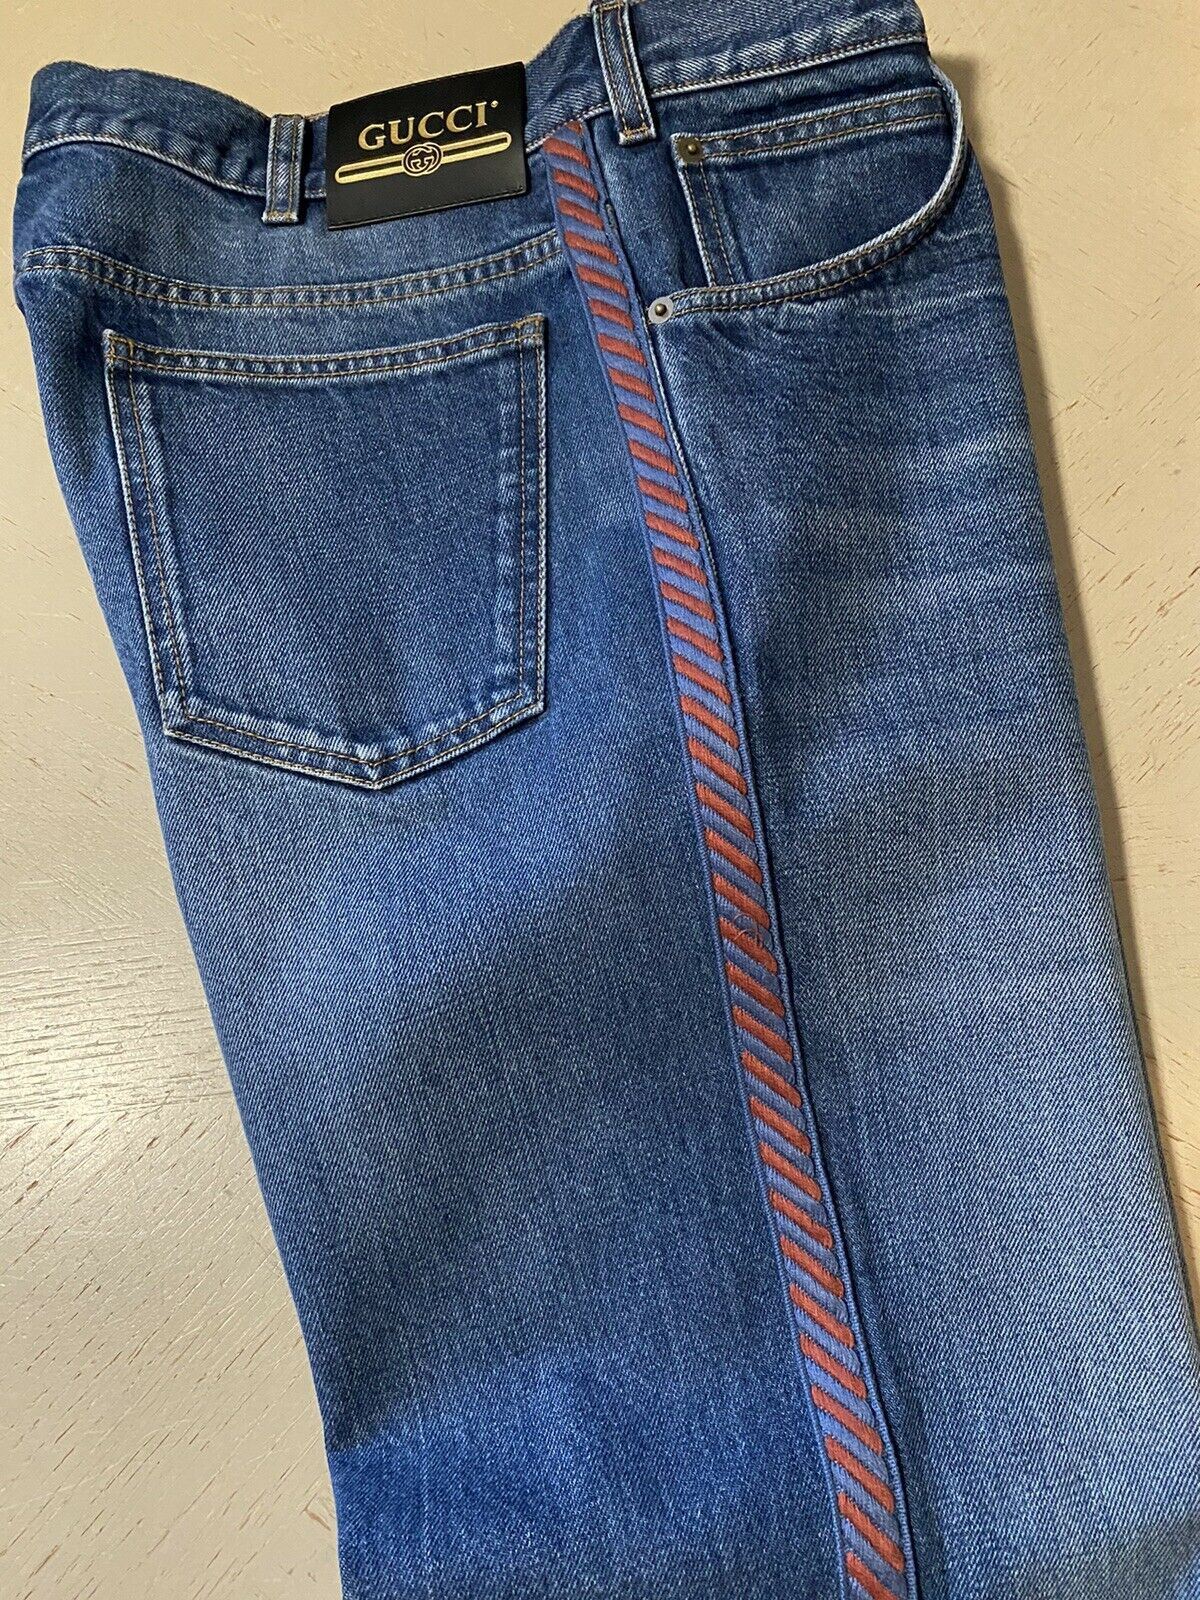 Gucci jeans men 36